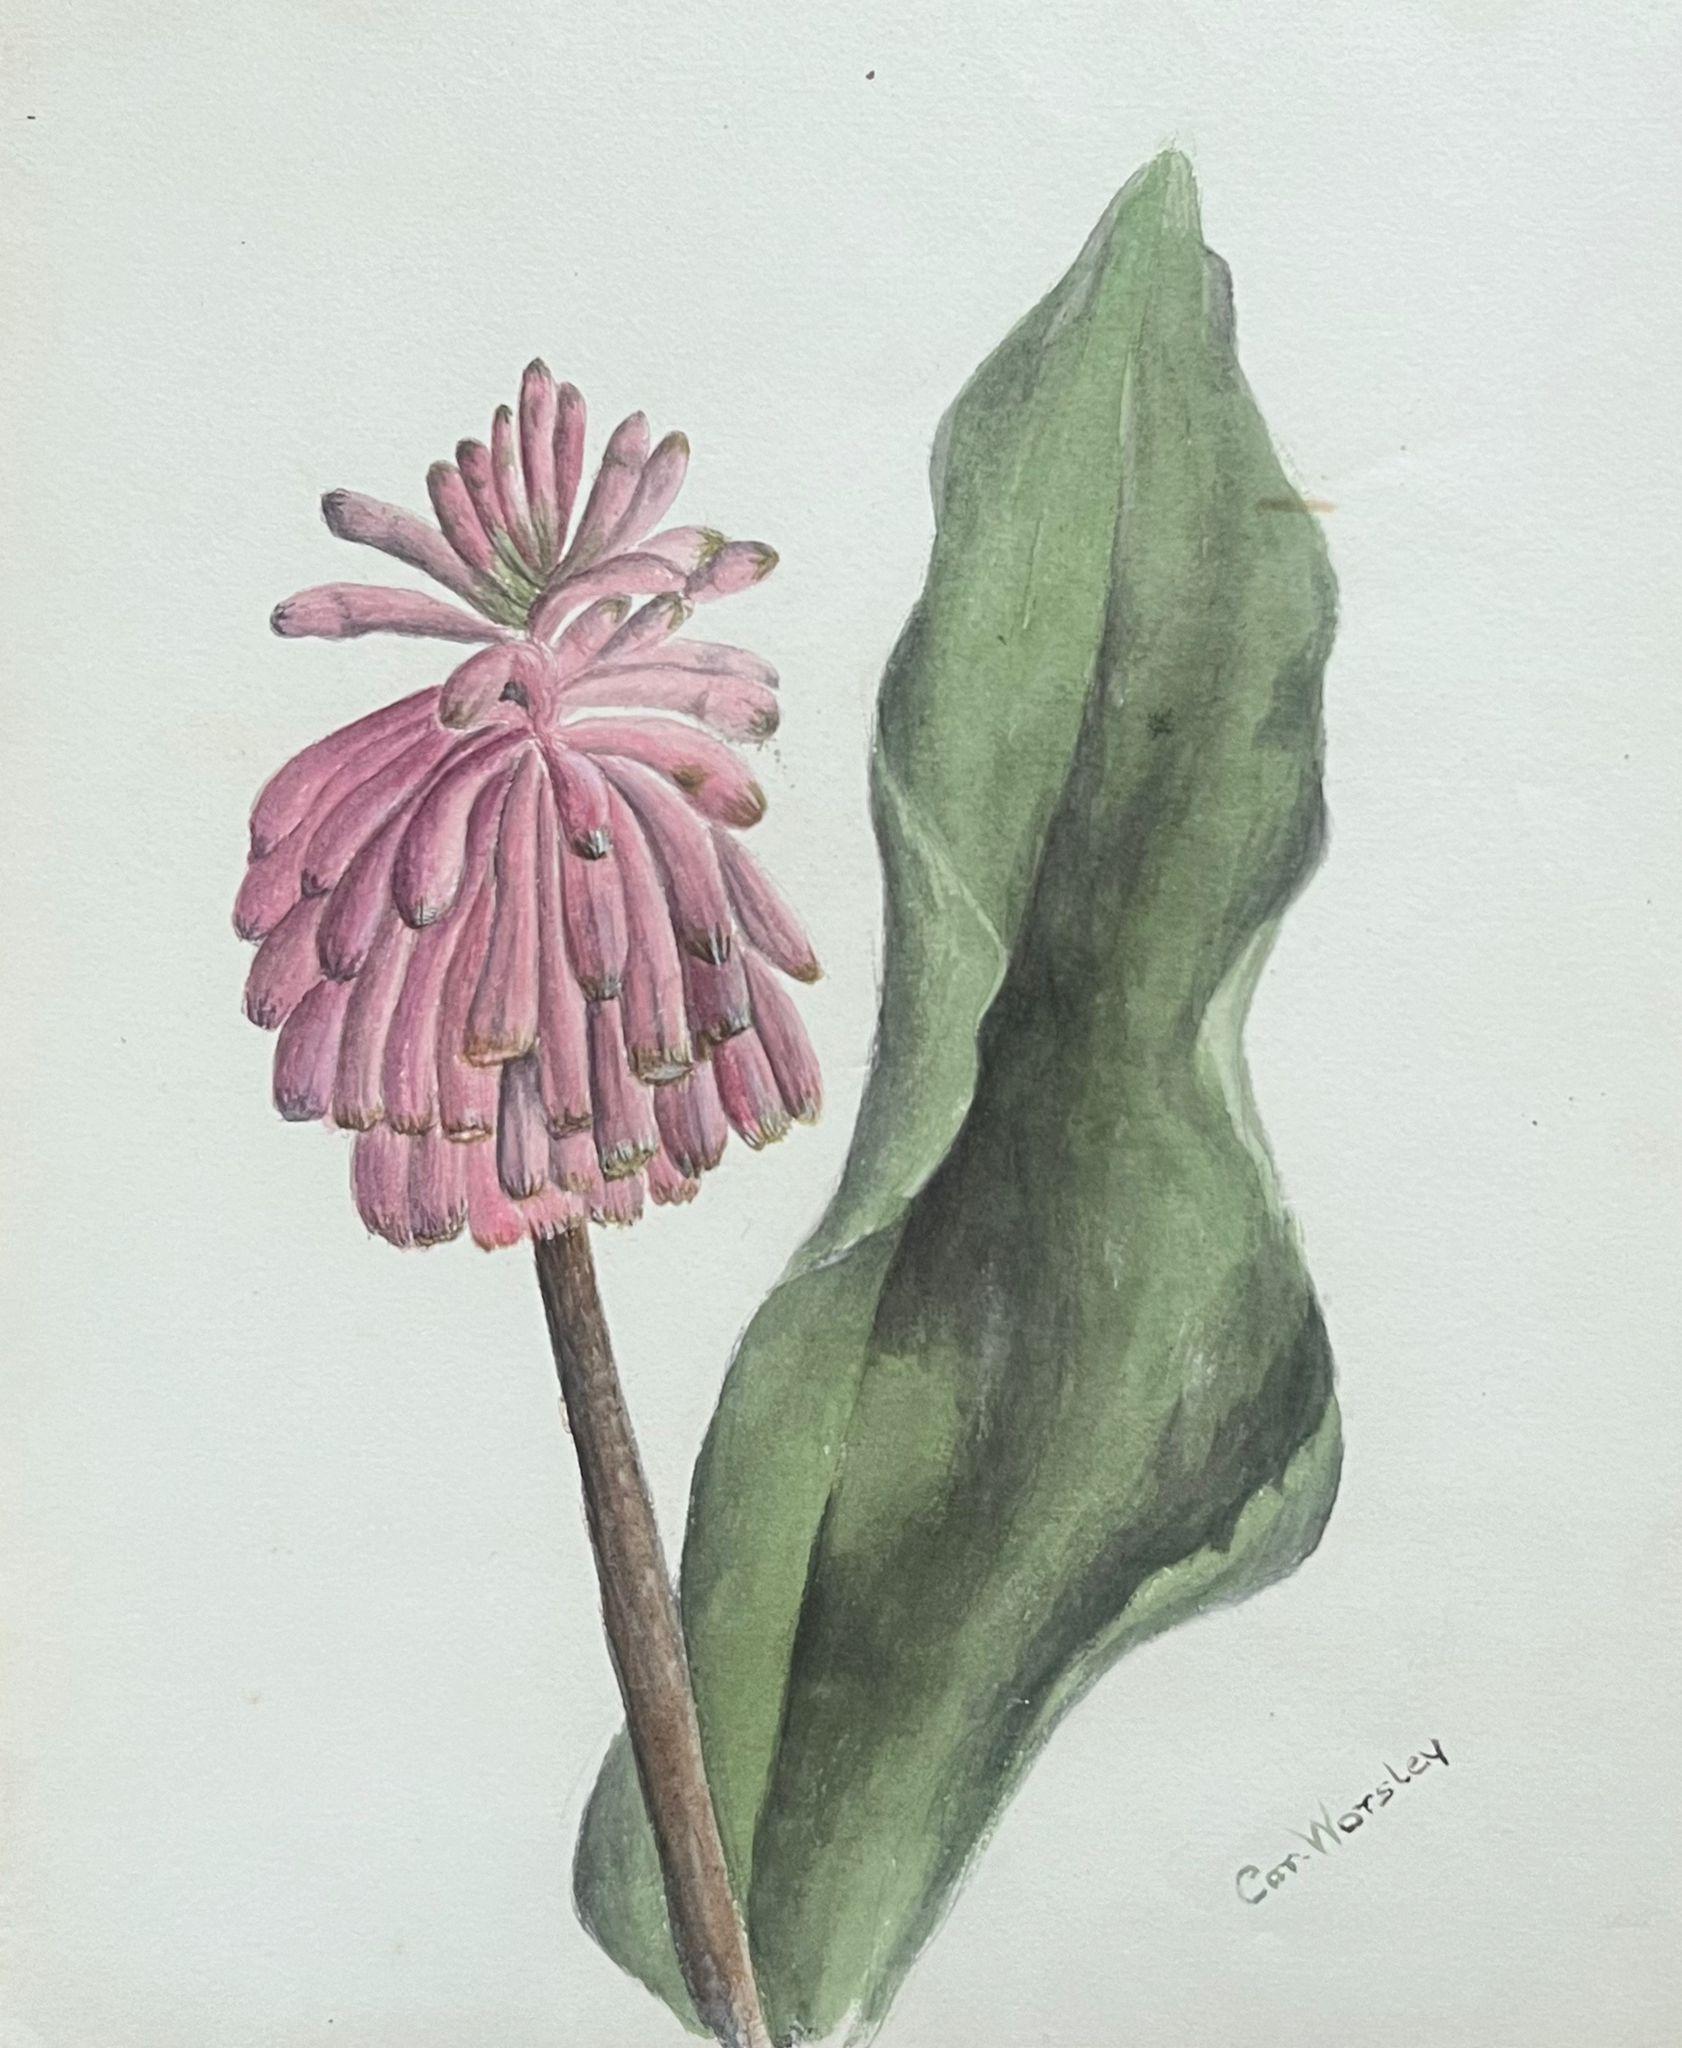 Sehr schöne originale englische botanische Aquarelle, die diese schöne Darstellung einer Blume/Pflanze zeigen. Das Werk stammt aus einer Privatsammlung in Surrey, England, und war Teil eines Albums mit Werken, die der Künstler in den frühen 1900er